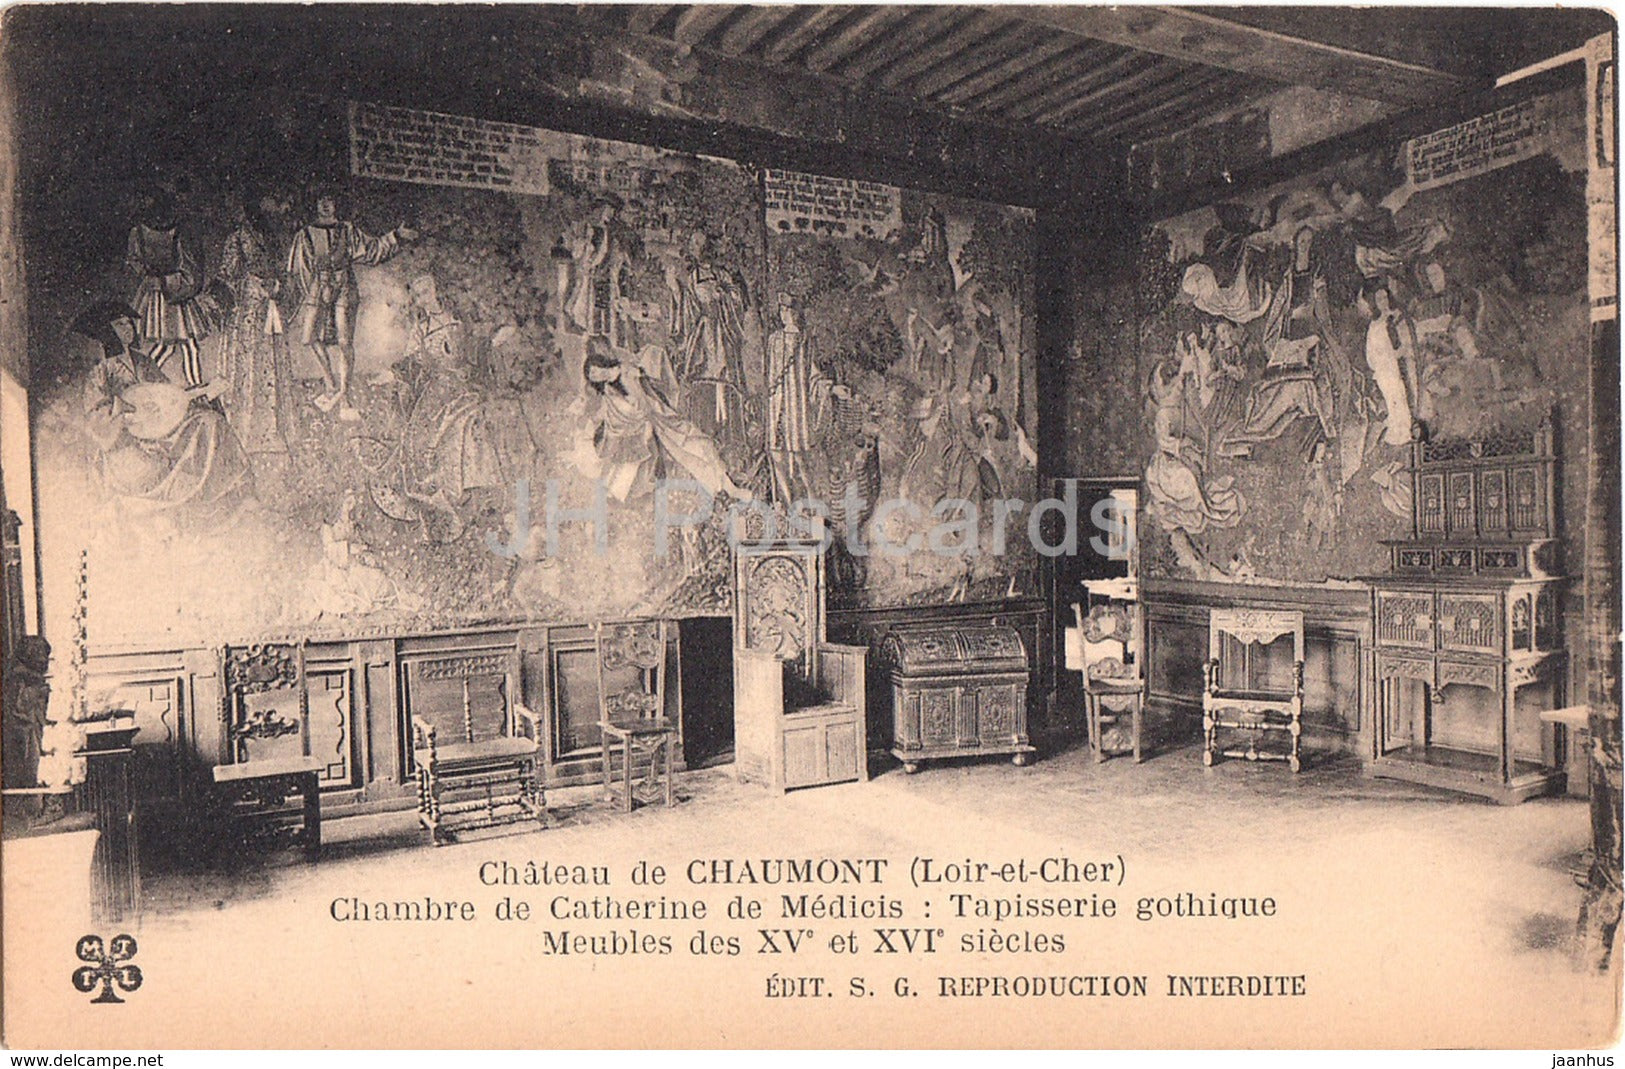 Chateau de Chaumont - Chambre de Catherine de Medicis - Tapisserie gothique - castle - old postcard - France - unused